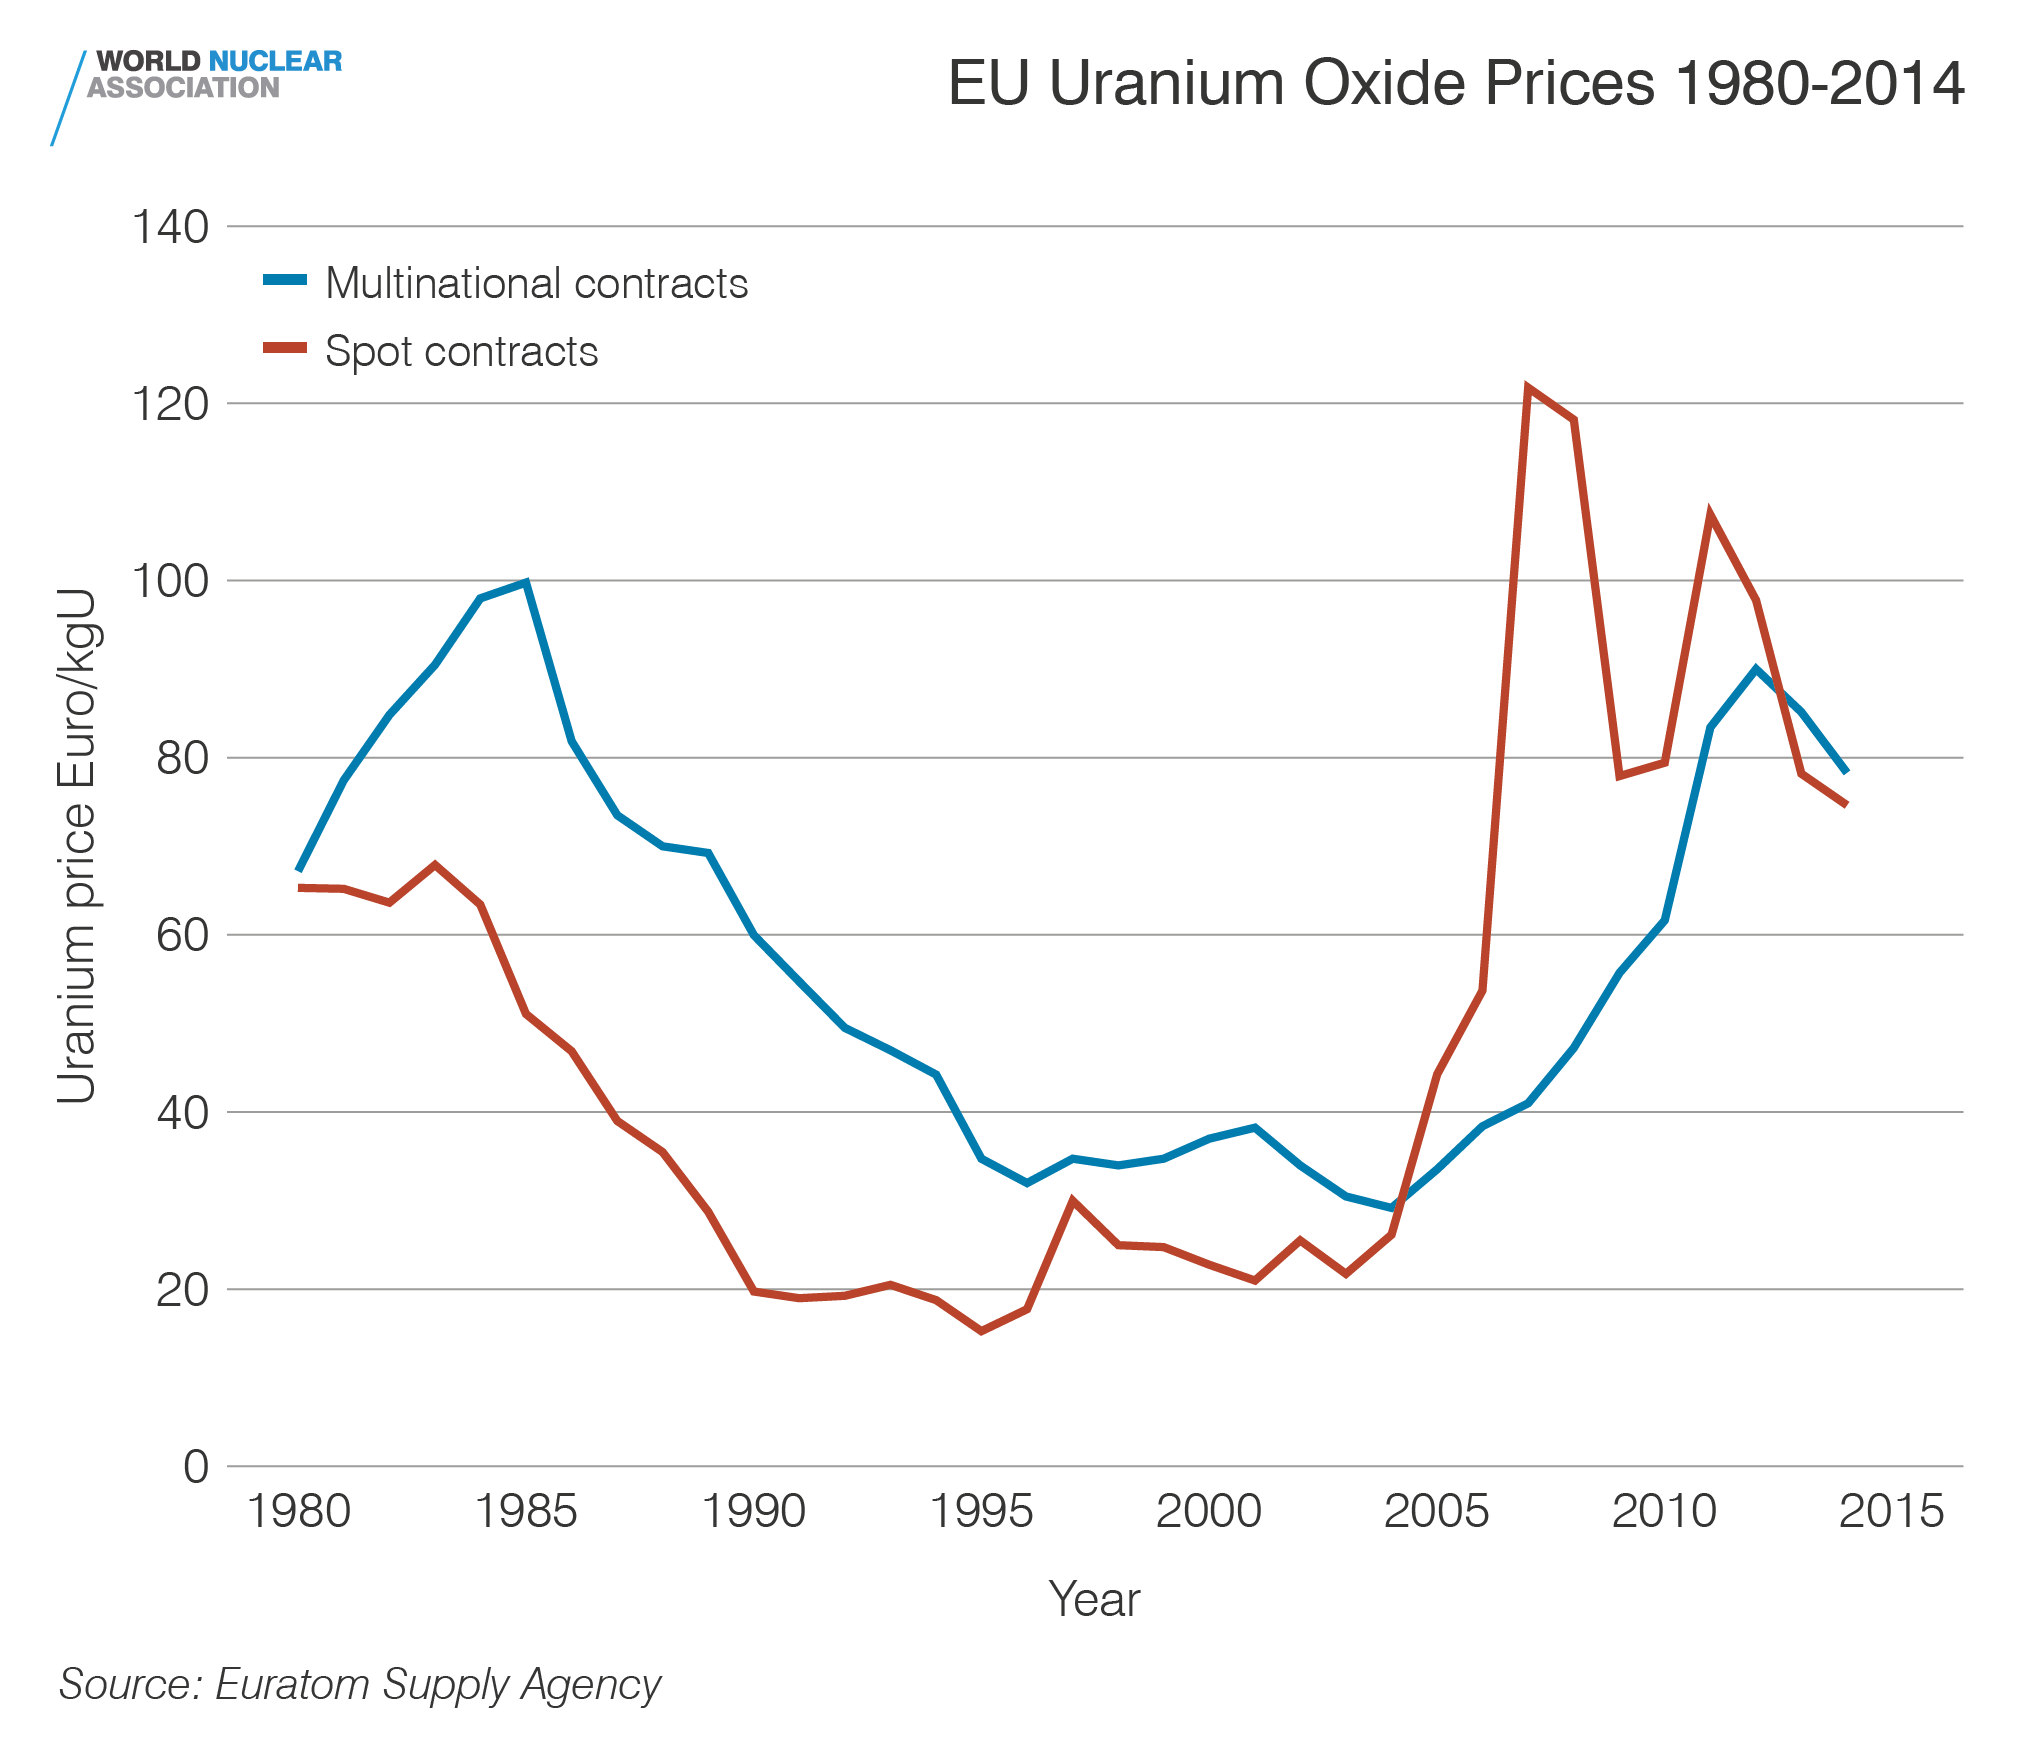 EU uranium oxide prices 1980-2014